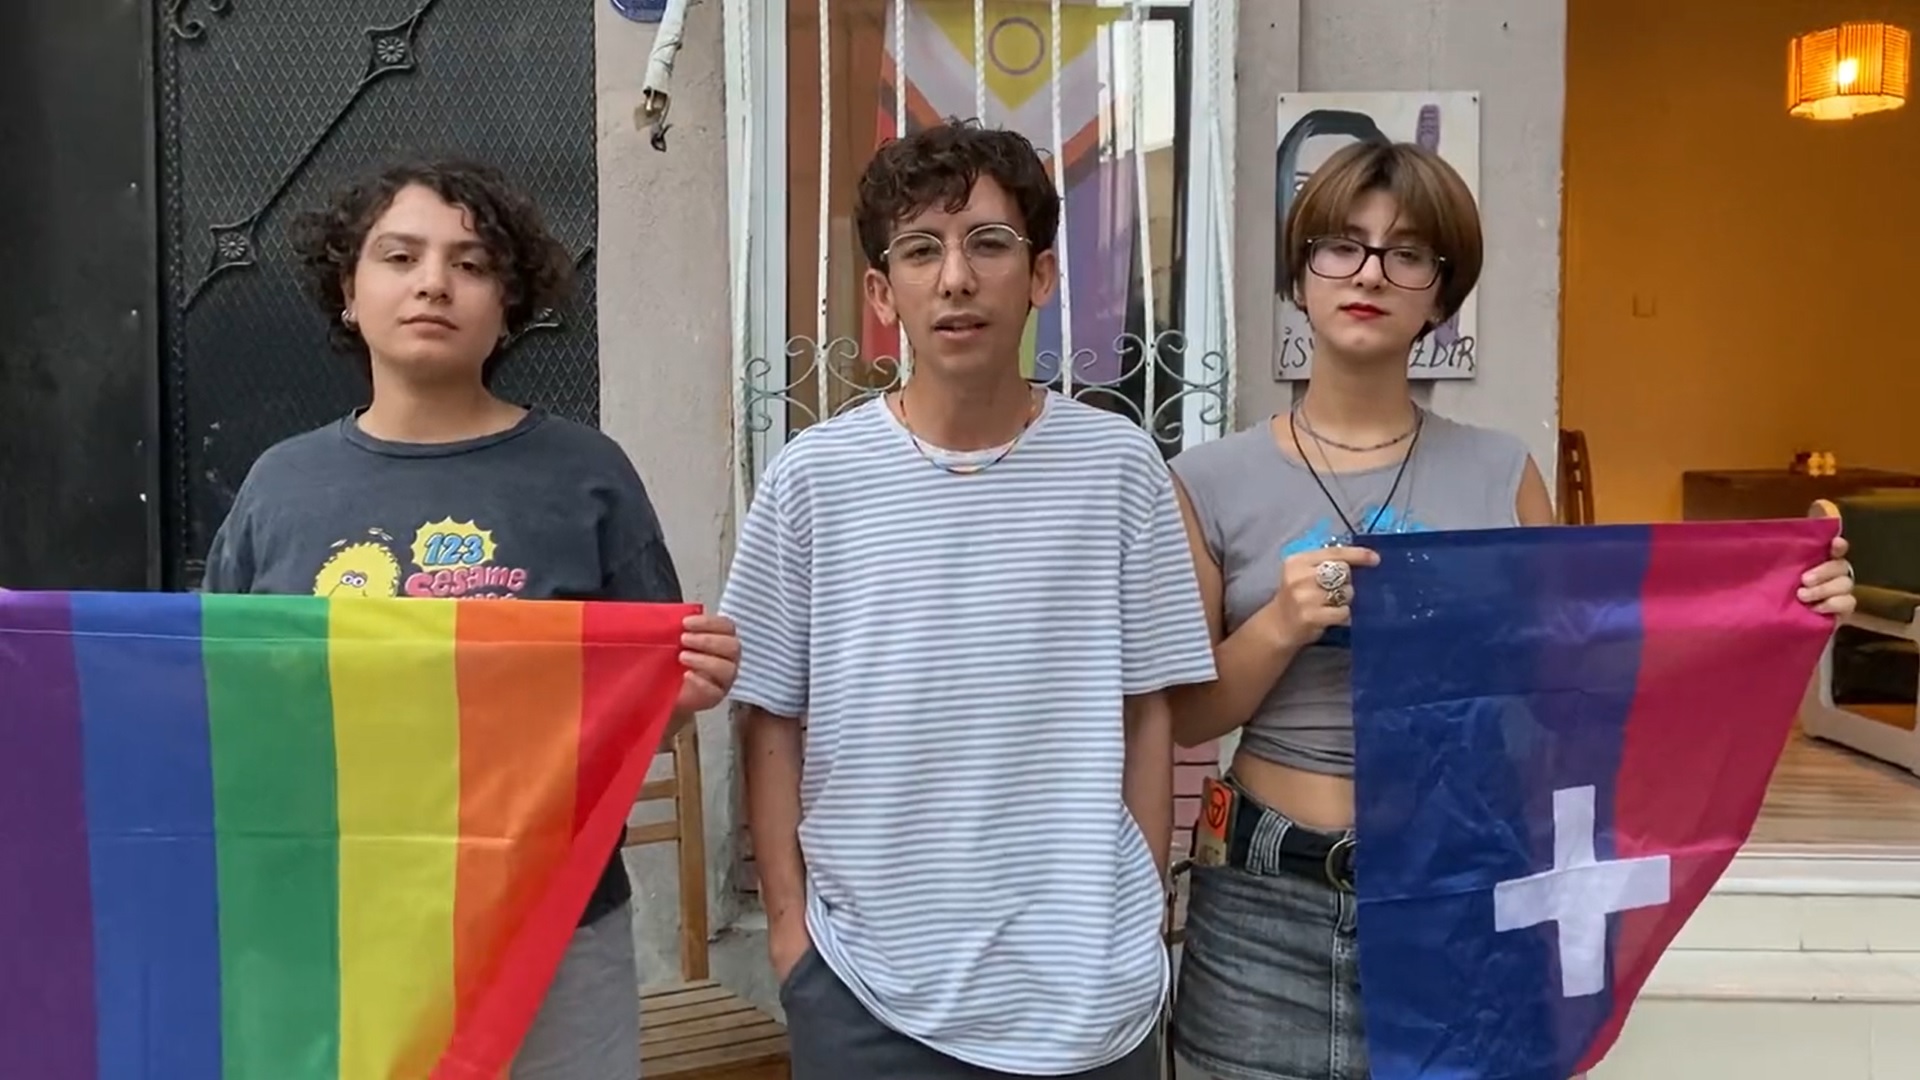 İzmir LGBTİ+ Onur Haftası’ndan Eskişehir ve Adana’ya dayanışma mesajı Kaos GL - LGBTİ+ Haber Portalı